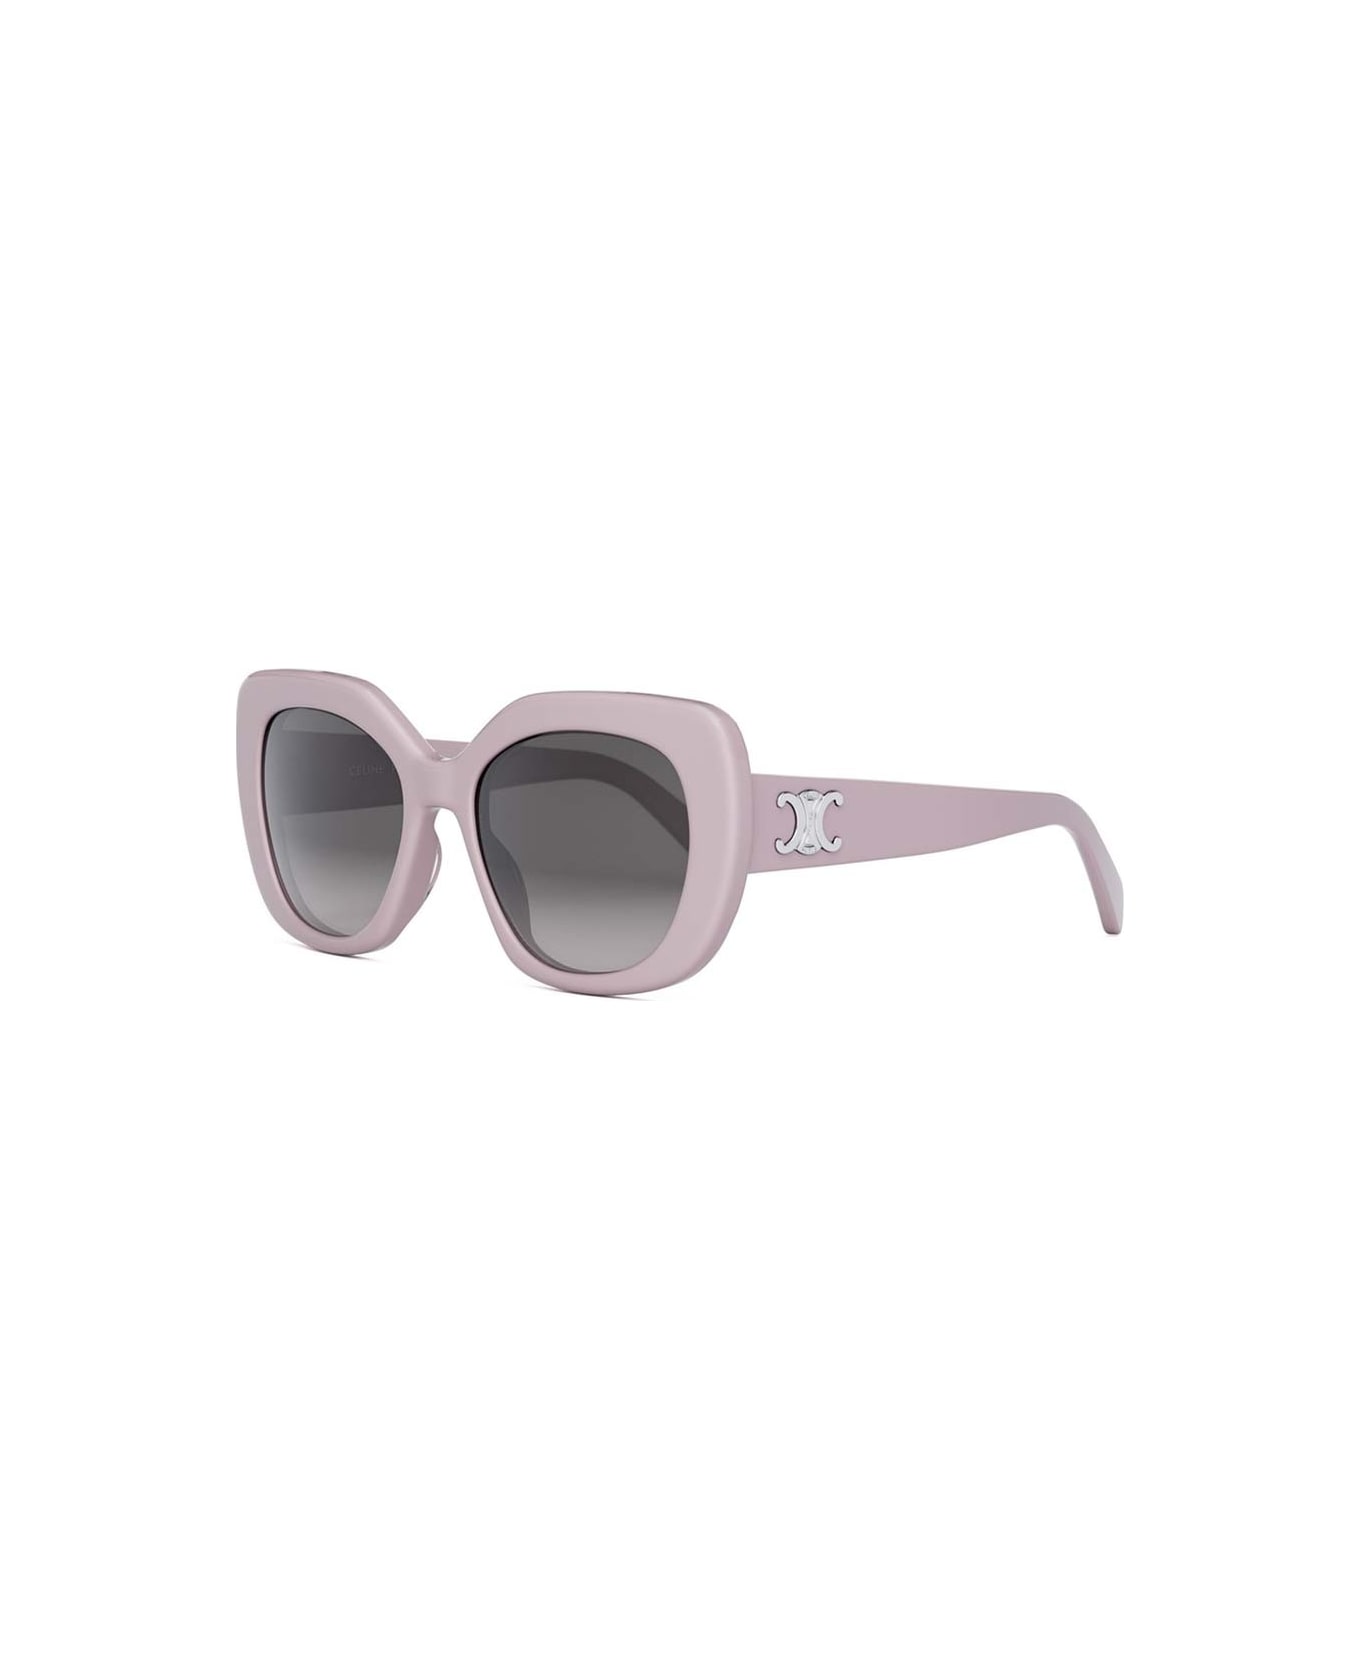 Celine Sunglasses - Rosa chiaro/Grigio sfumato サングラス